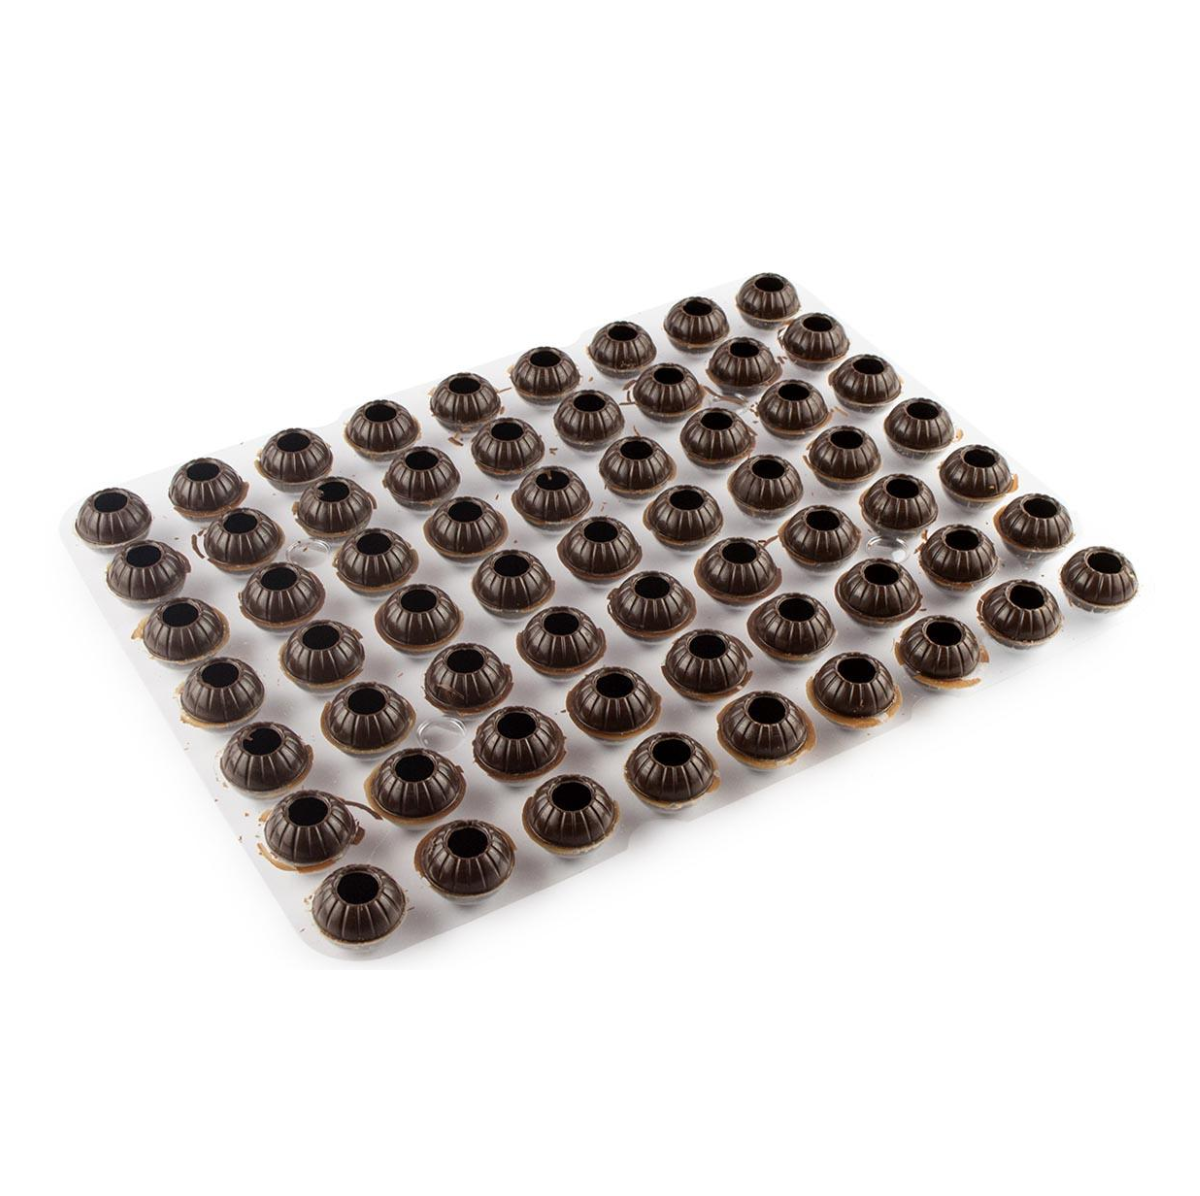 Капсулы для трюфелей из тёмного шоколада, Callebaut, Бельгия, 63 шт.  | Фото — Магазин Andy Chef  1